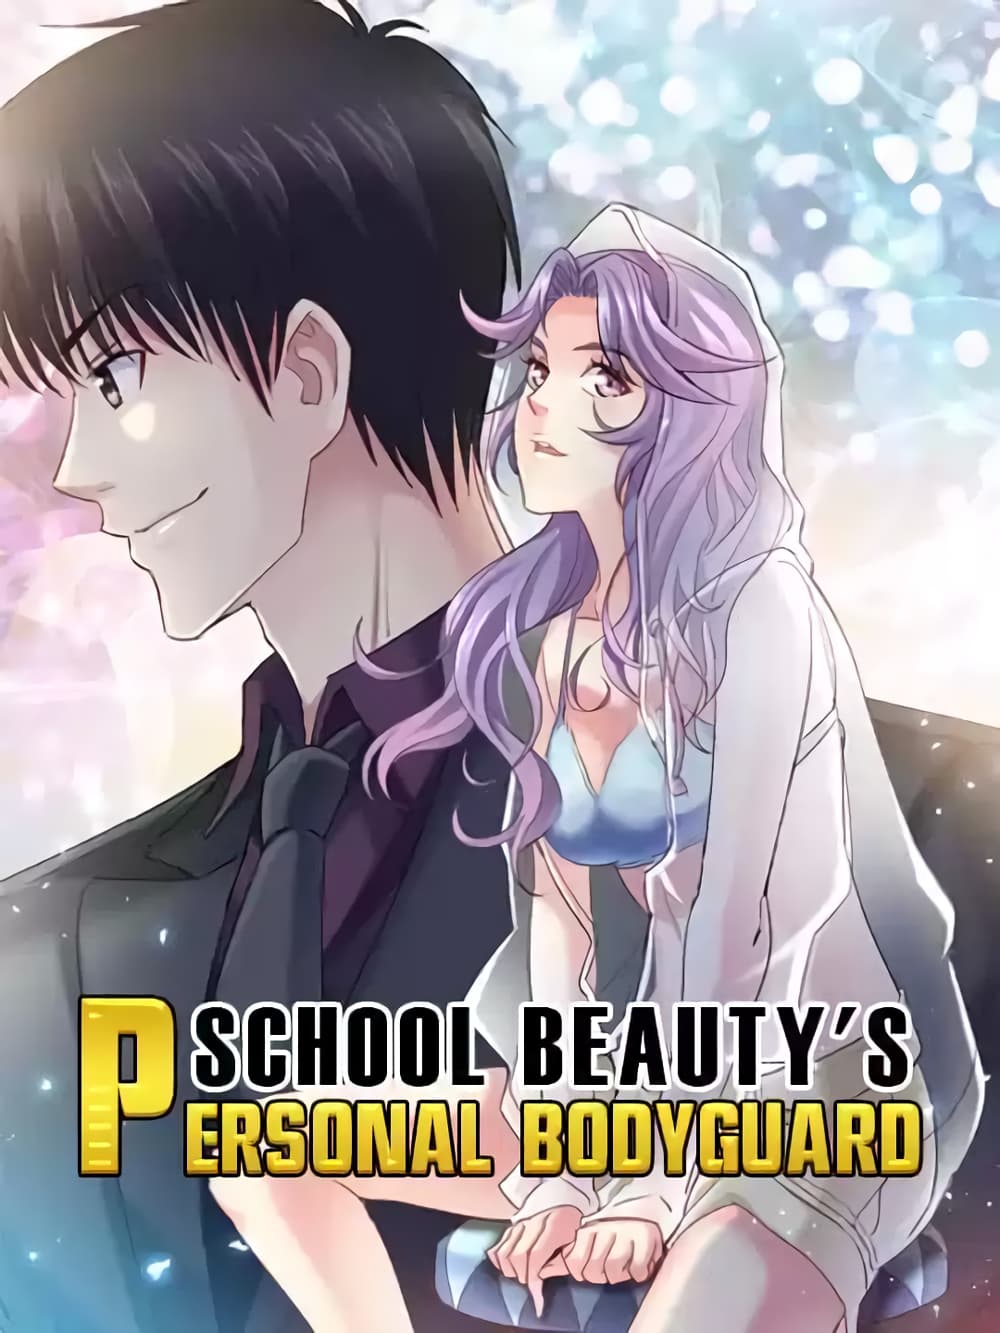 School Beauty's Bodyguard 291 (1)